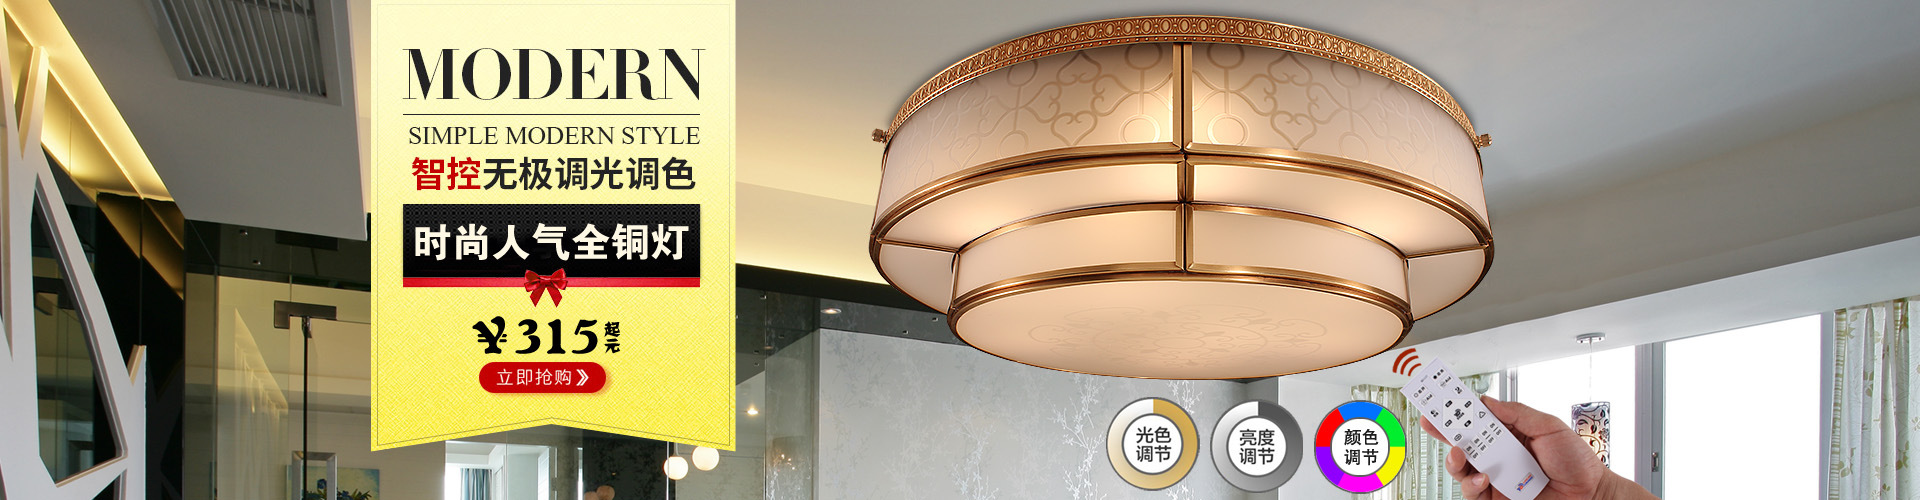 欧式全铜LED水晶吸顶灯圆形 美式客厅新款灯具 简约卧室无极调光